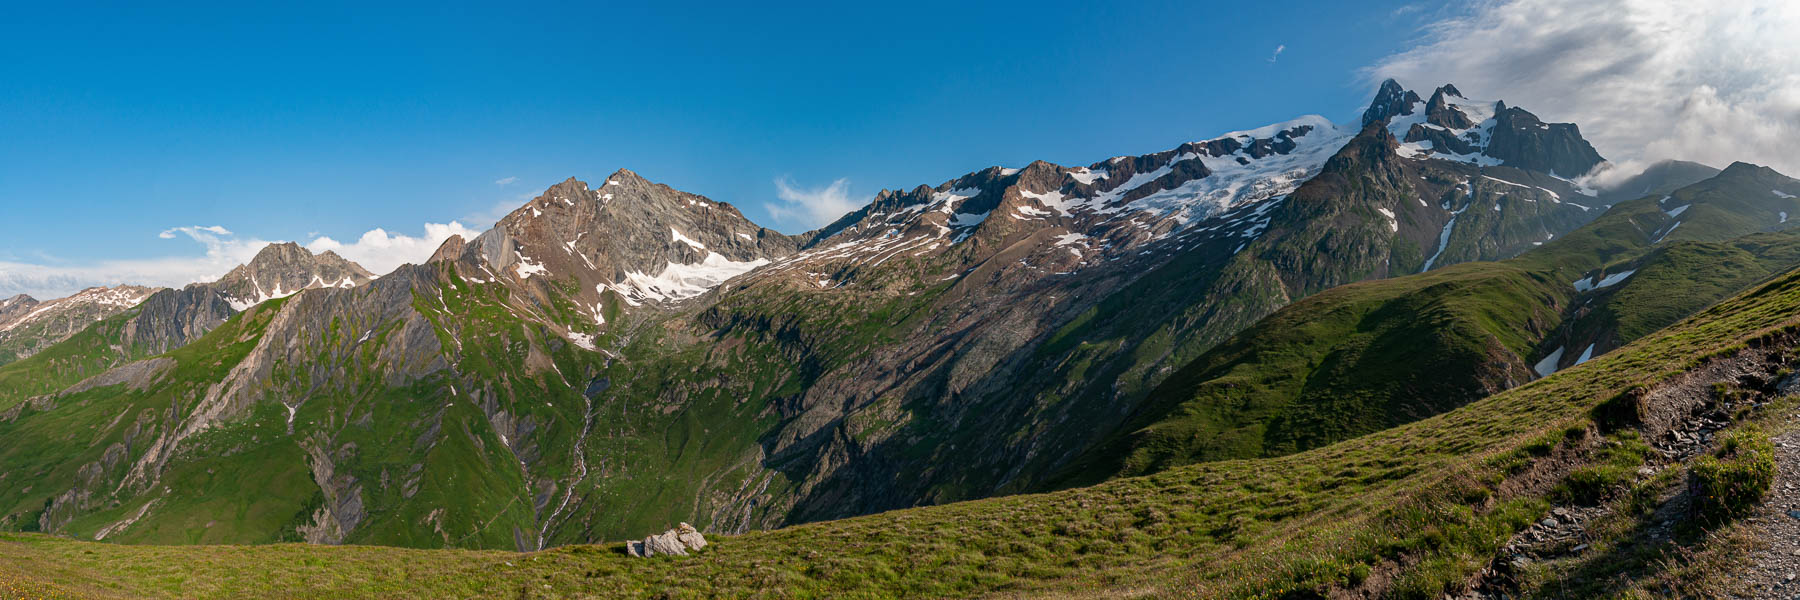 En montant au col de la Seigne : panorama du col des Fours à l'aiguille des Glaciers